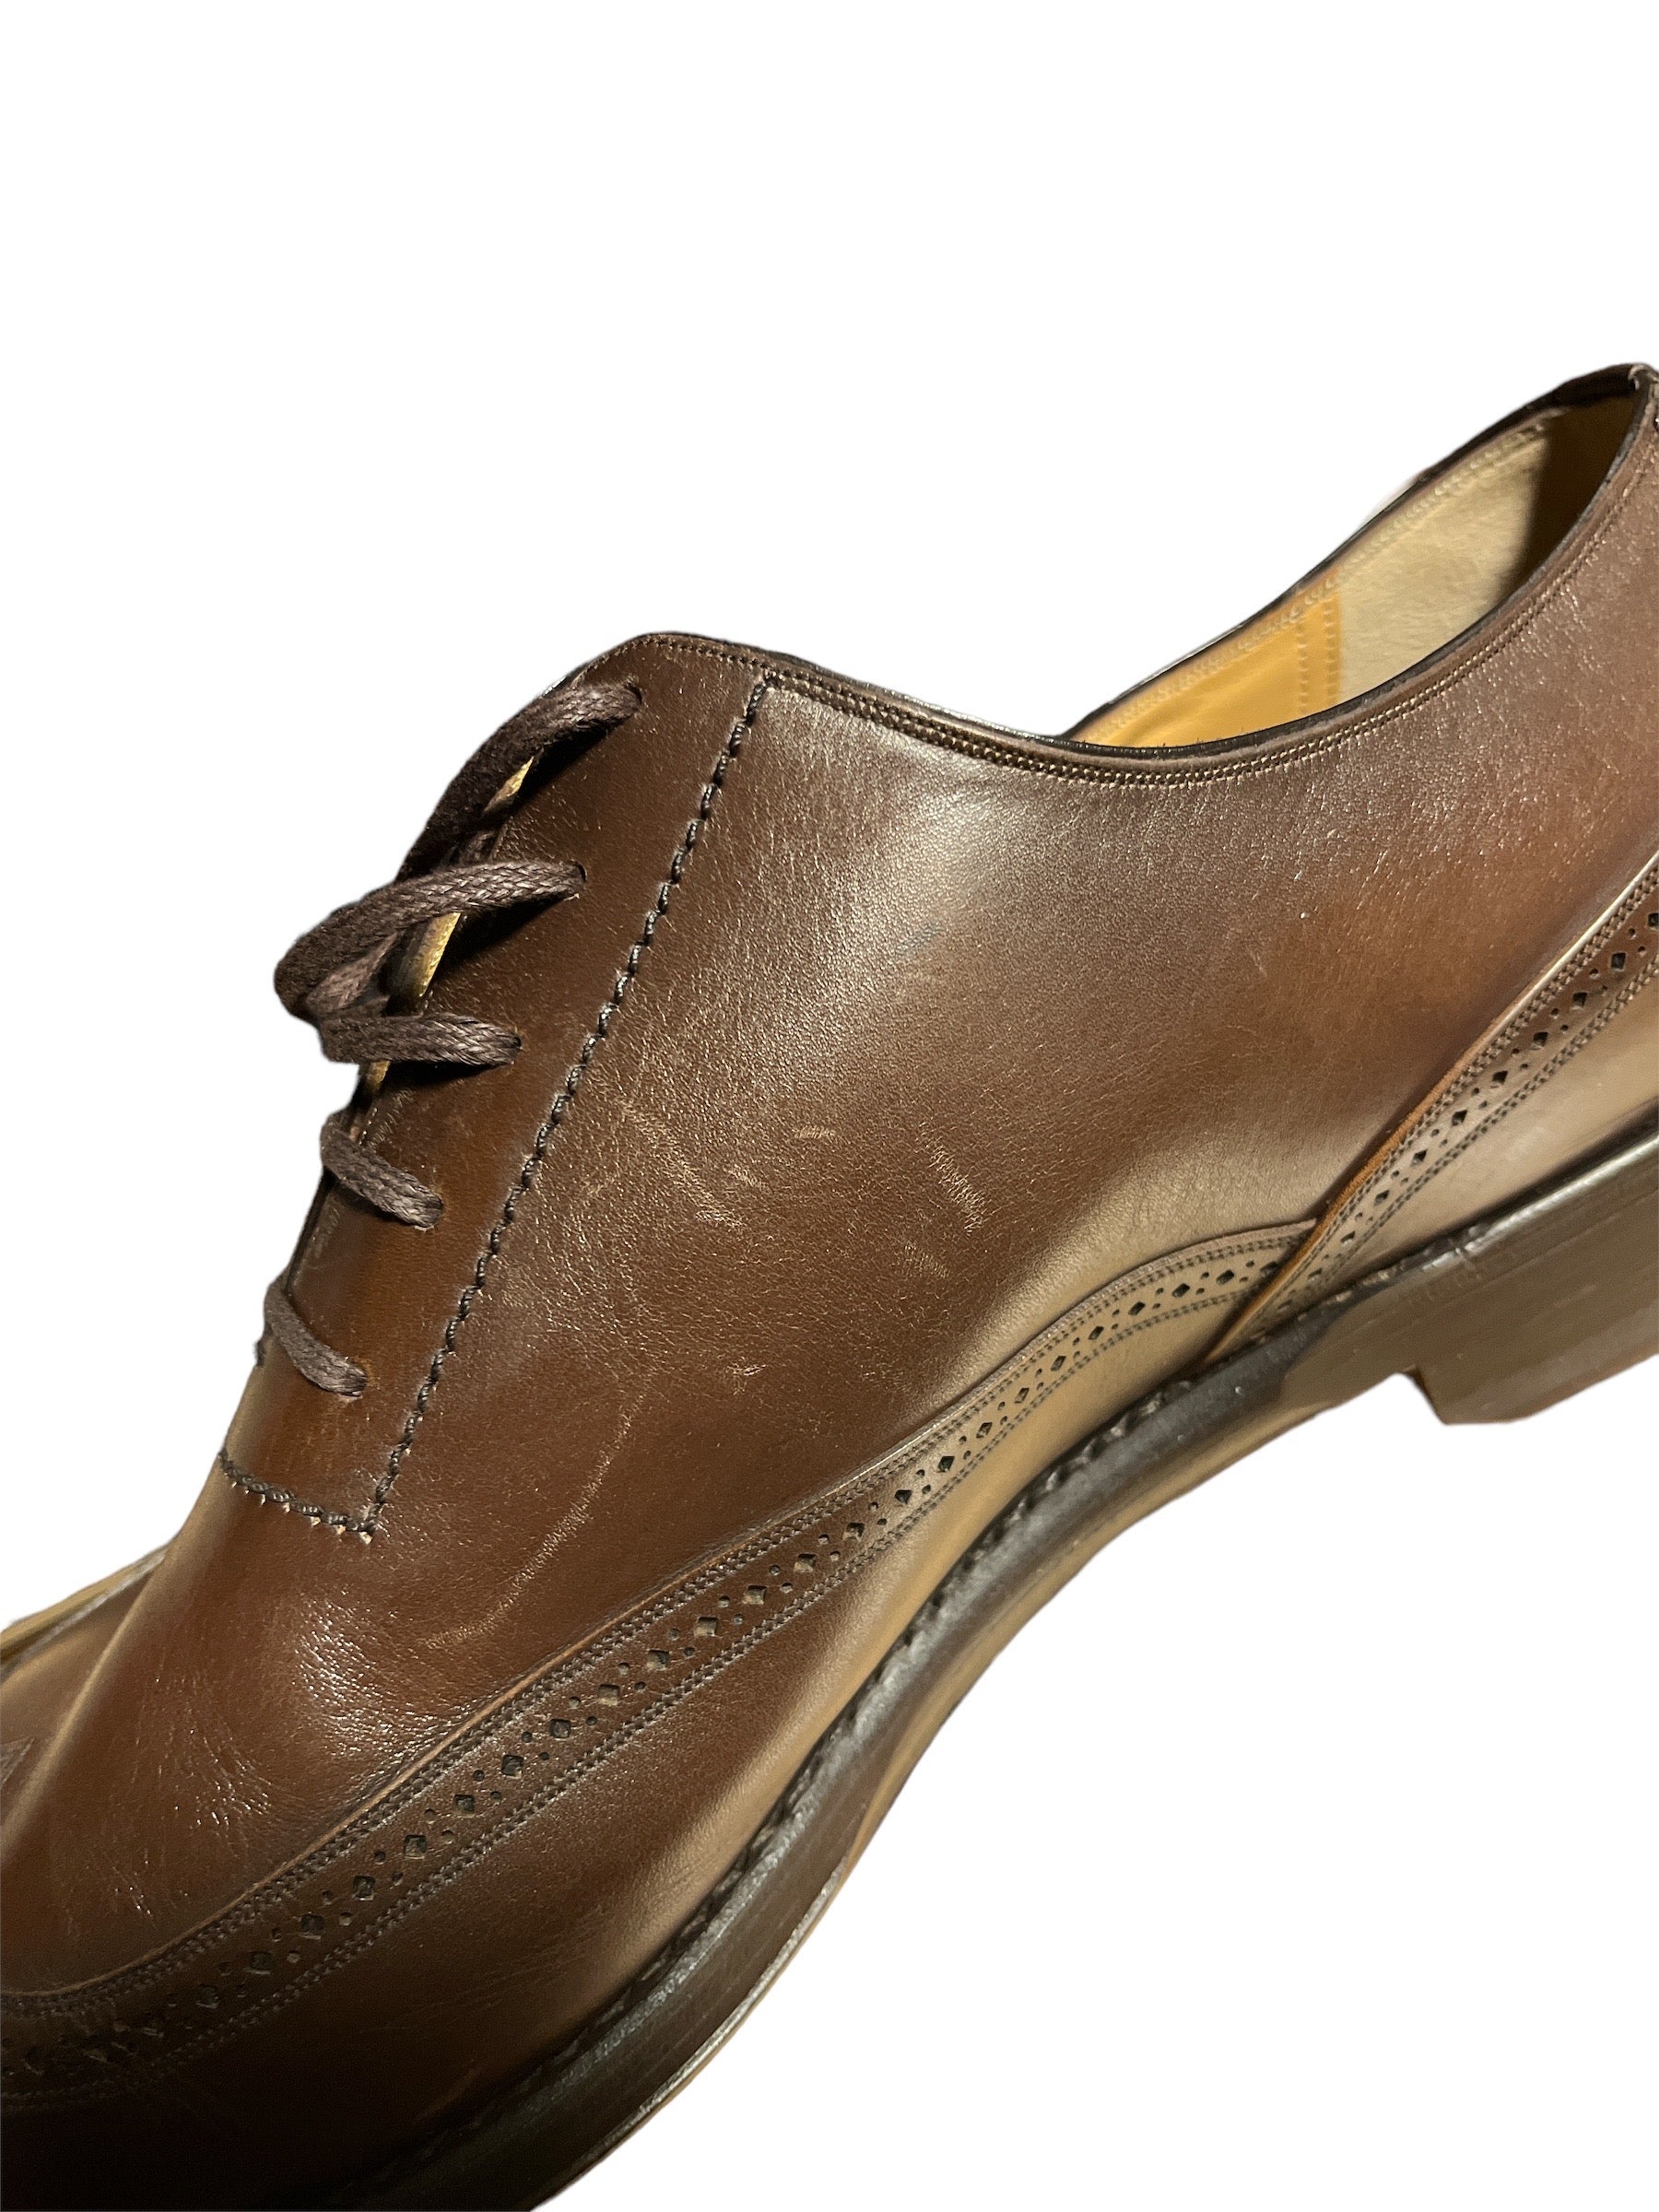 Bally Scamir 622 Calf Plain Shoes- Mid Brown